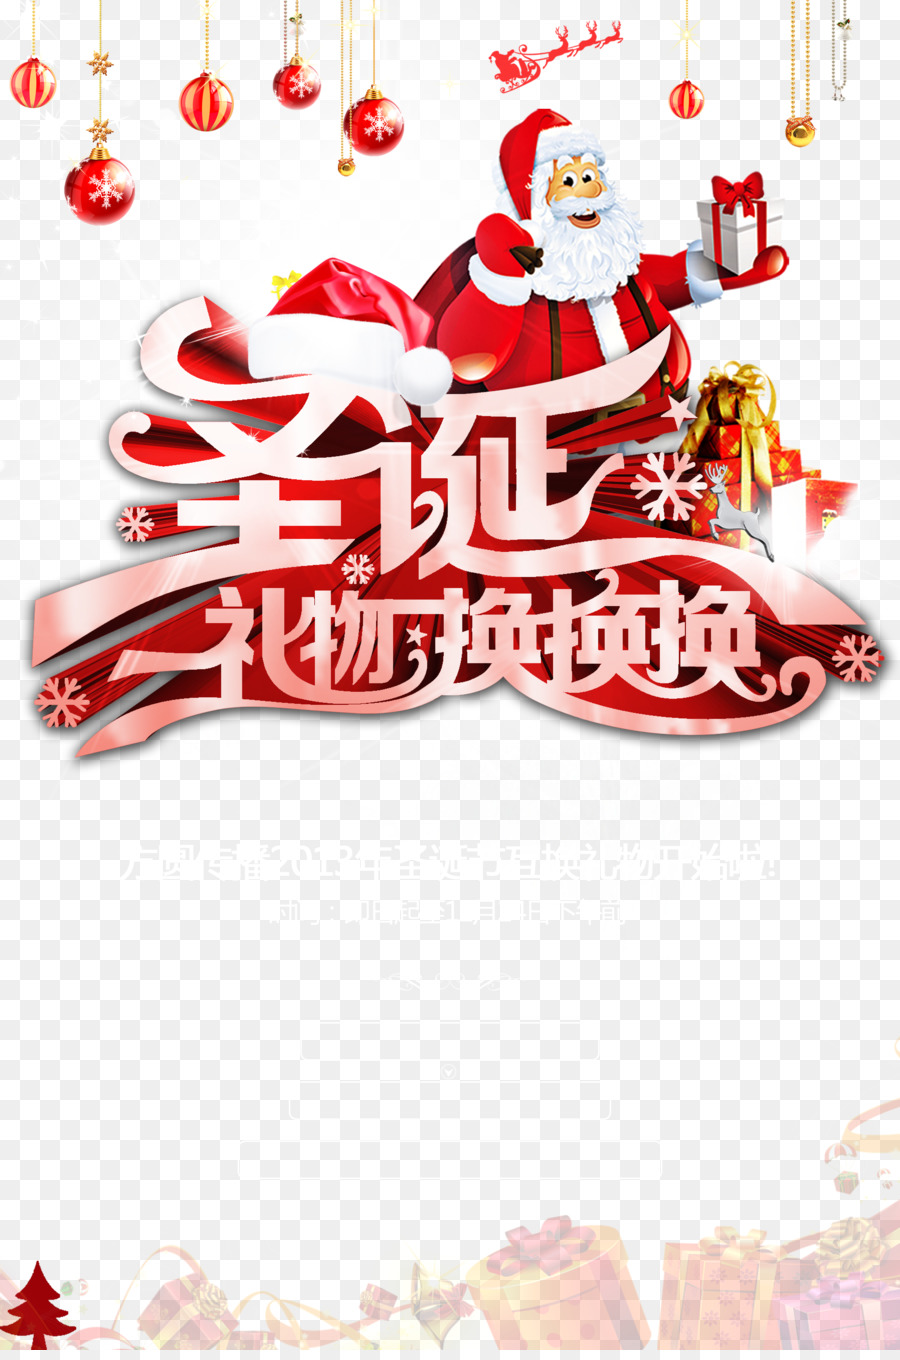 Santa Claus Giáng sinh trang trí cây thông Giáng sinh món Quà - Sáng món quà Giáng sinh Santa Claus